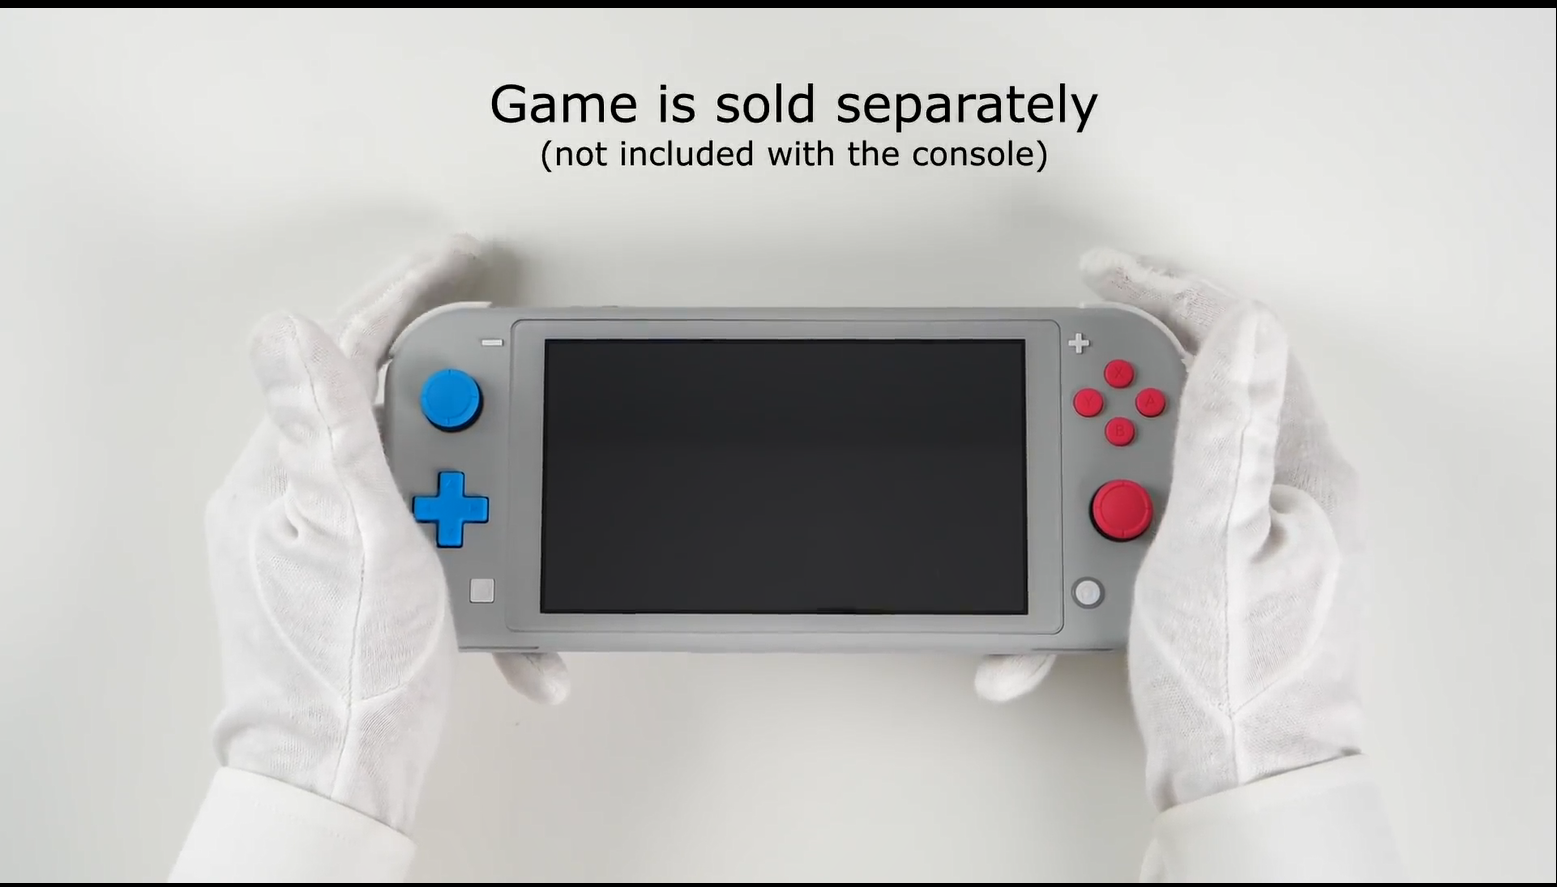 《宝可梦剑盾》限定款Switch Lite开箱 红蓝按键它香么？